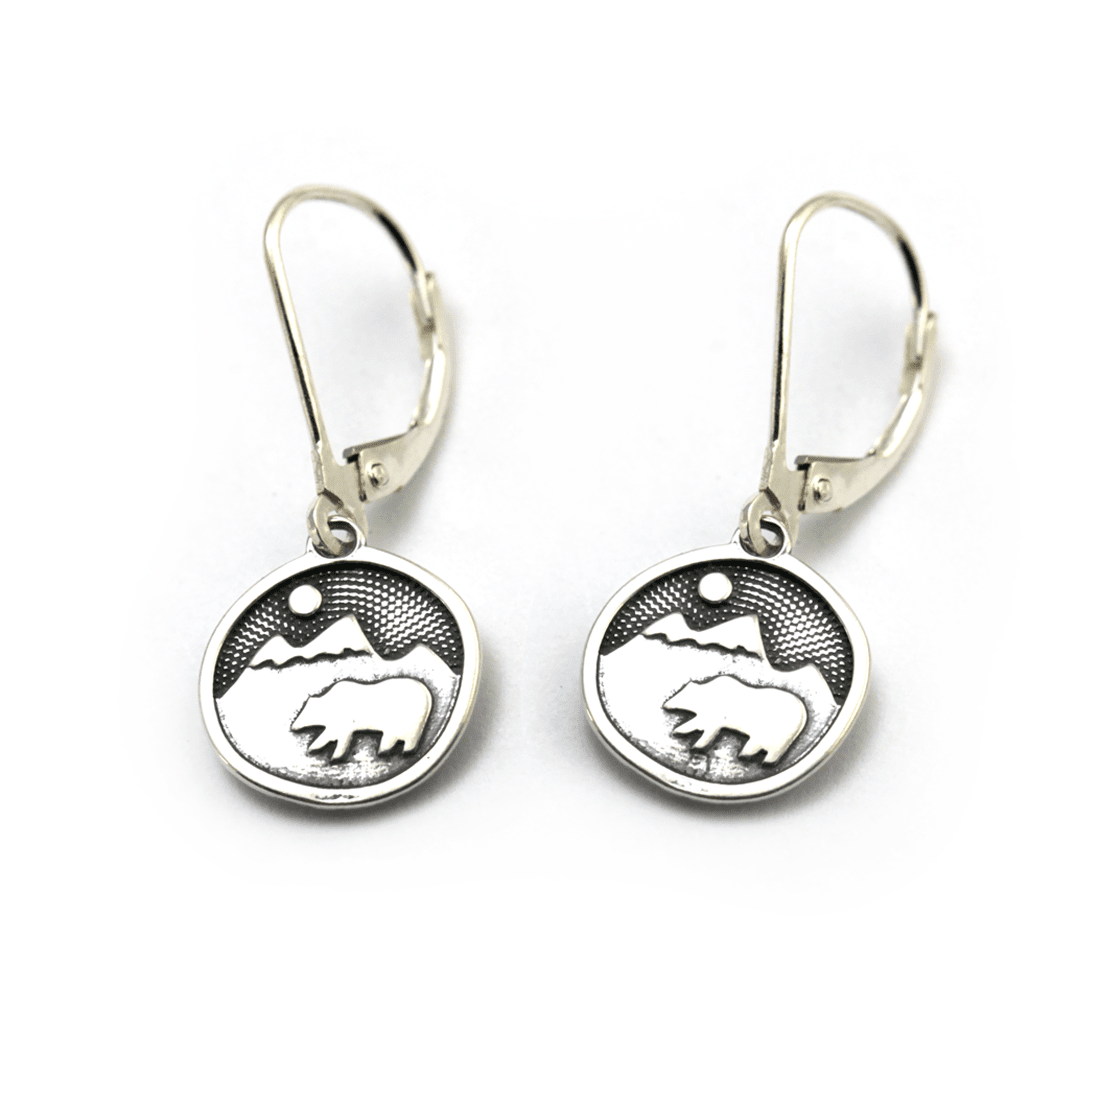 Bear on mountain earrings in sterling silver